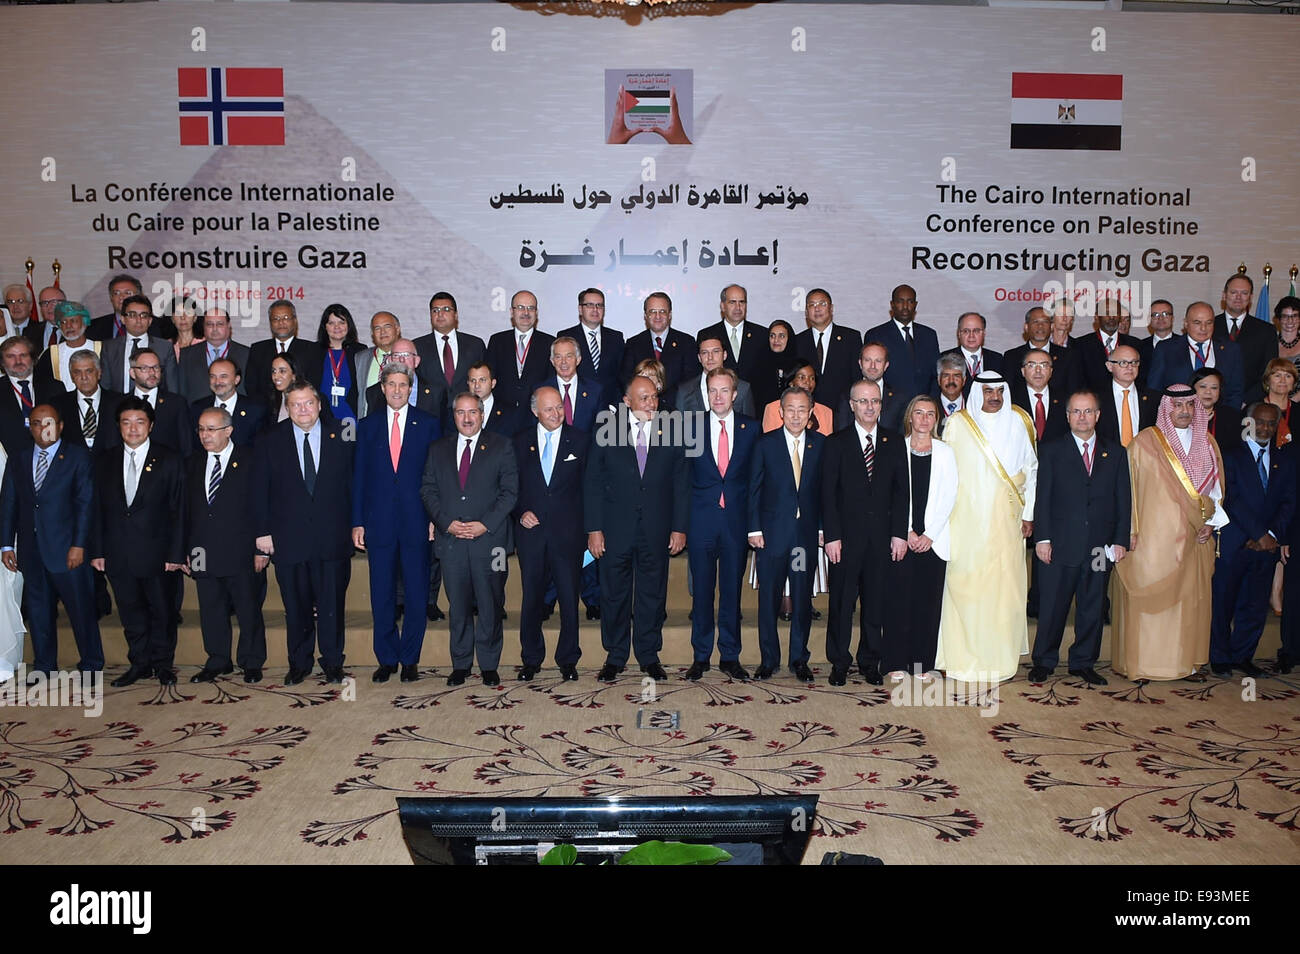 Stati Uniti Il segretario di Stato John Kerry si unisce ai partecipanti per una foto di gruppo in mezzo alla striscia di Gaza conferenza dei donatori organizzata da Egitto e Norvegia al Cairo, in Egitto, il 12 ottobre 2014. Foto Stock